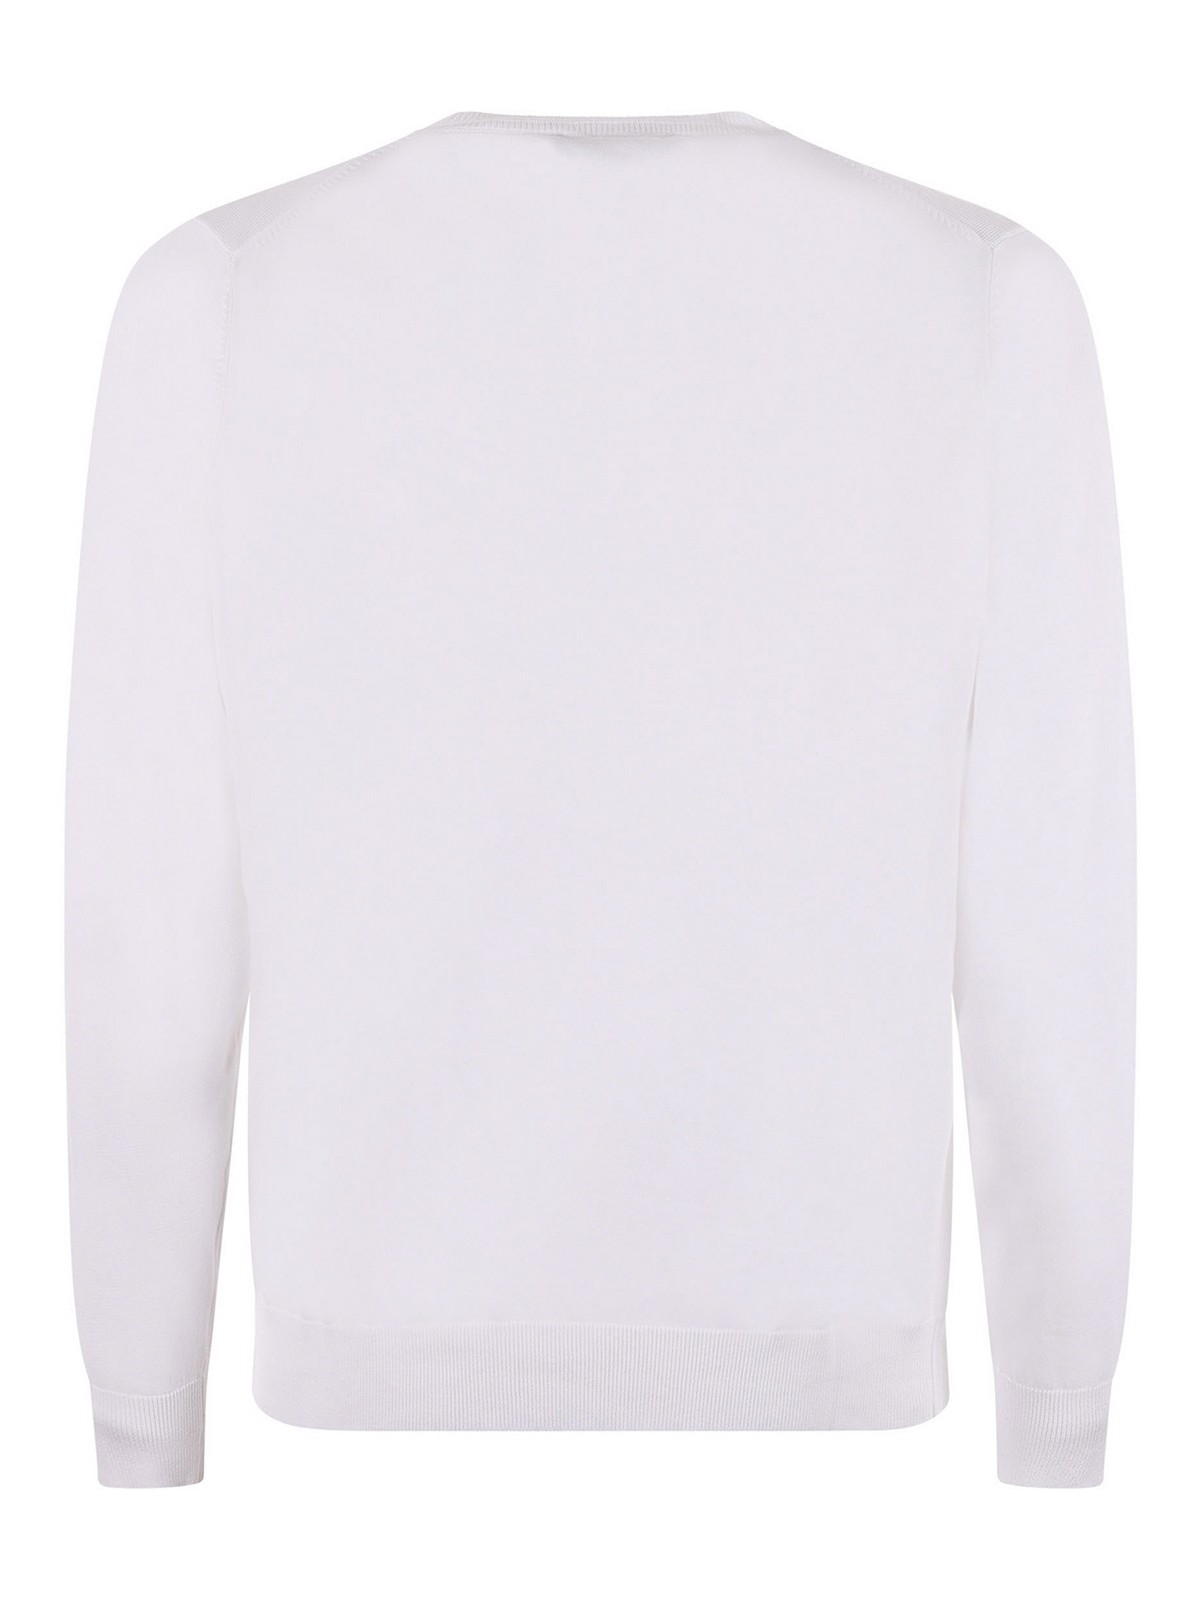 Shop Jeordie's Jeordies Sweater In White